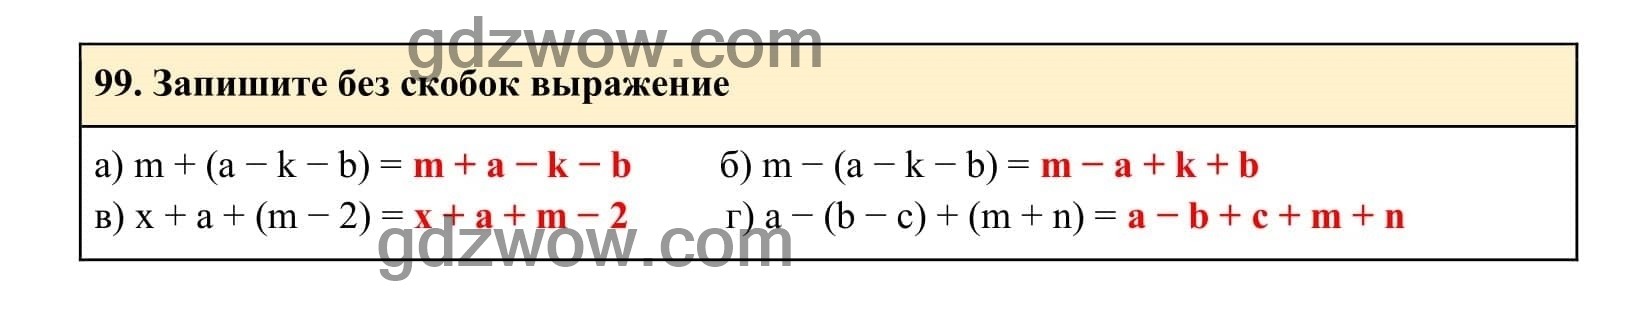 Упражнение 99 - ГДЗ по Алгебре 7 класс Учебник Макарычев (решебник) - GDZwow